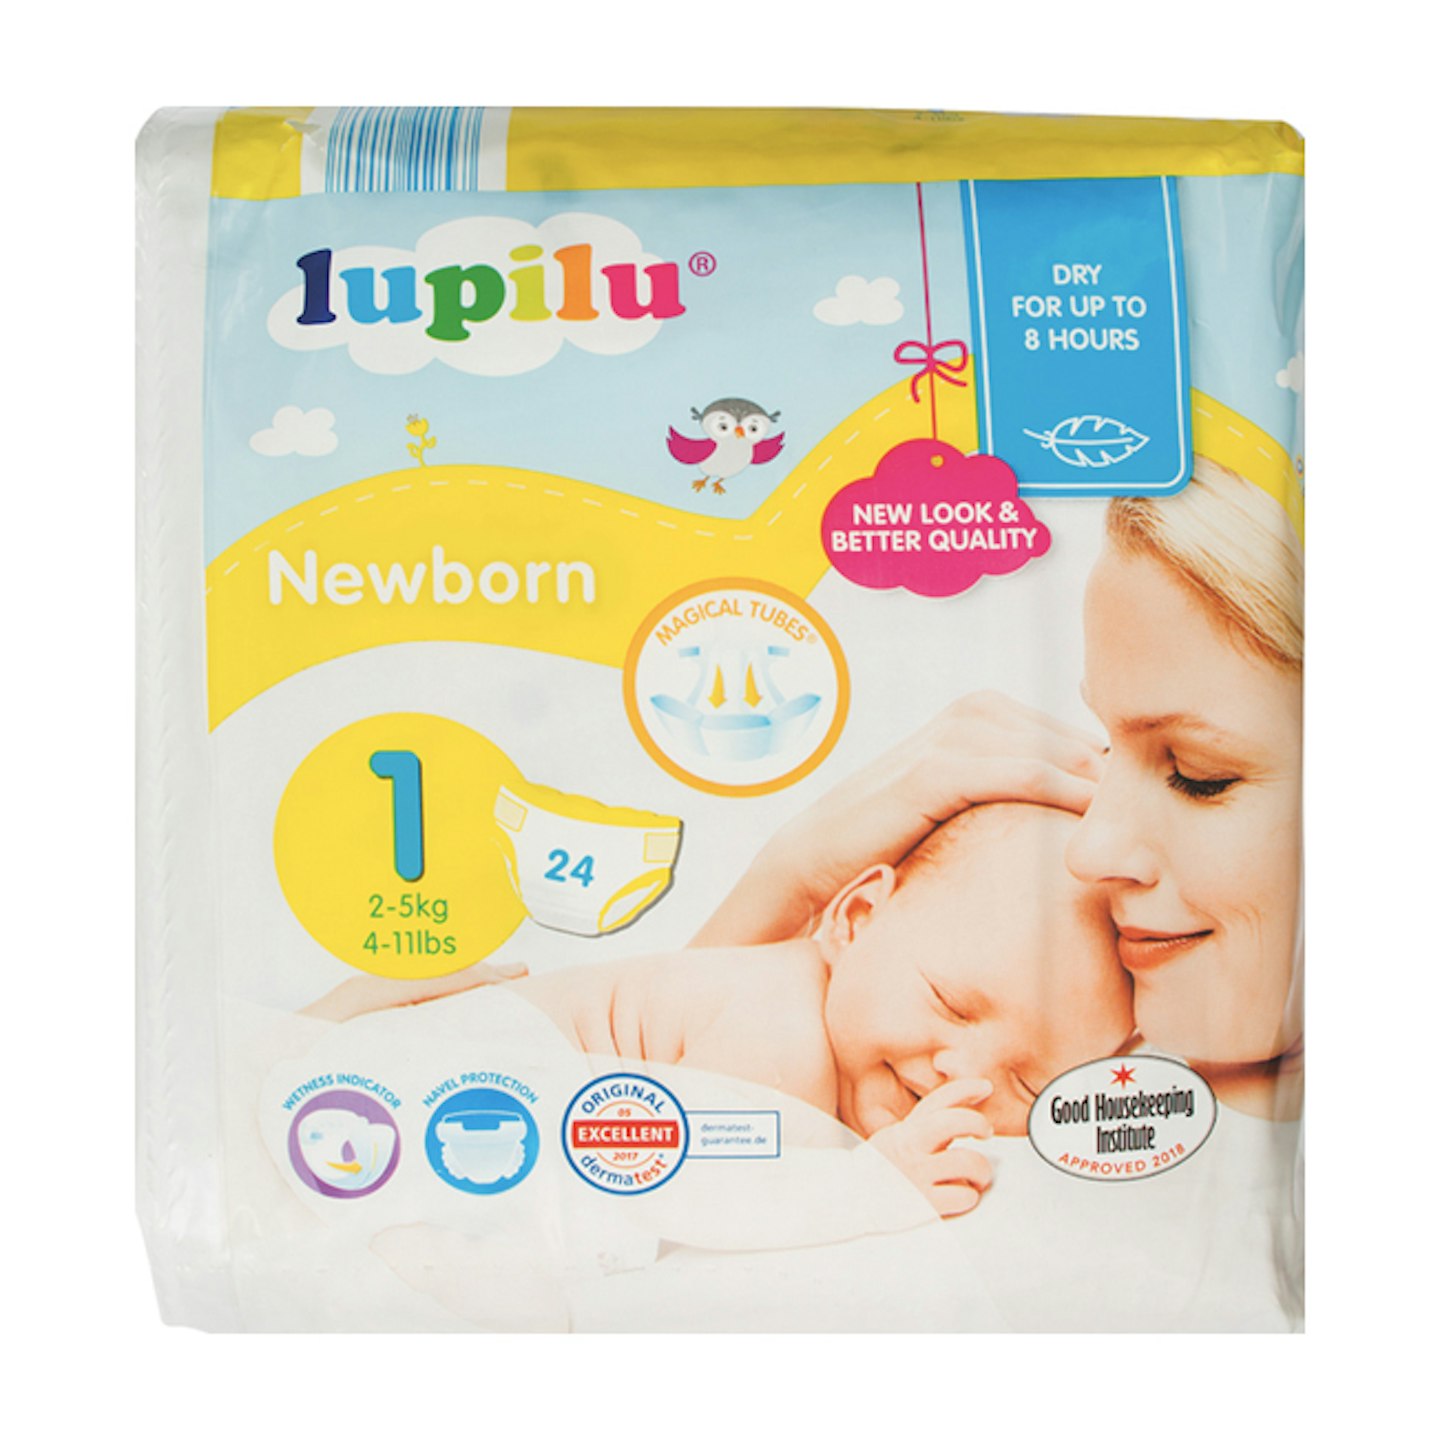 Lupilu Size 1 Newborn Nappies